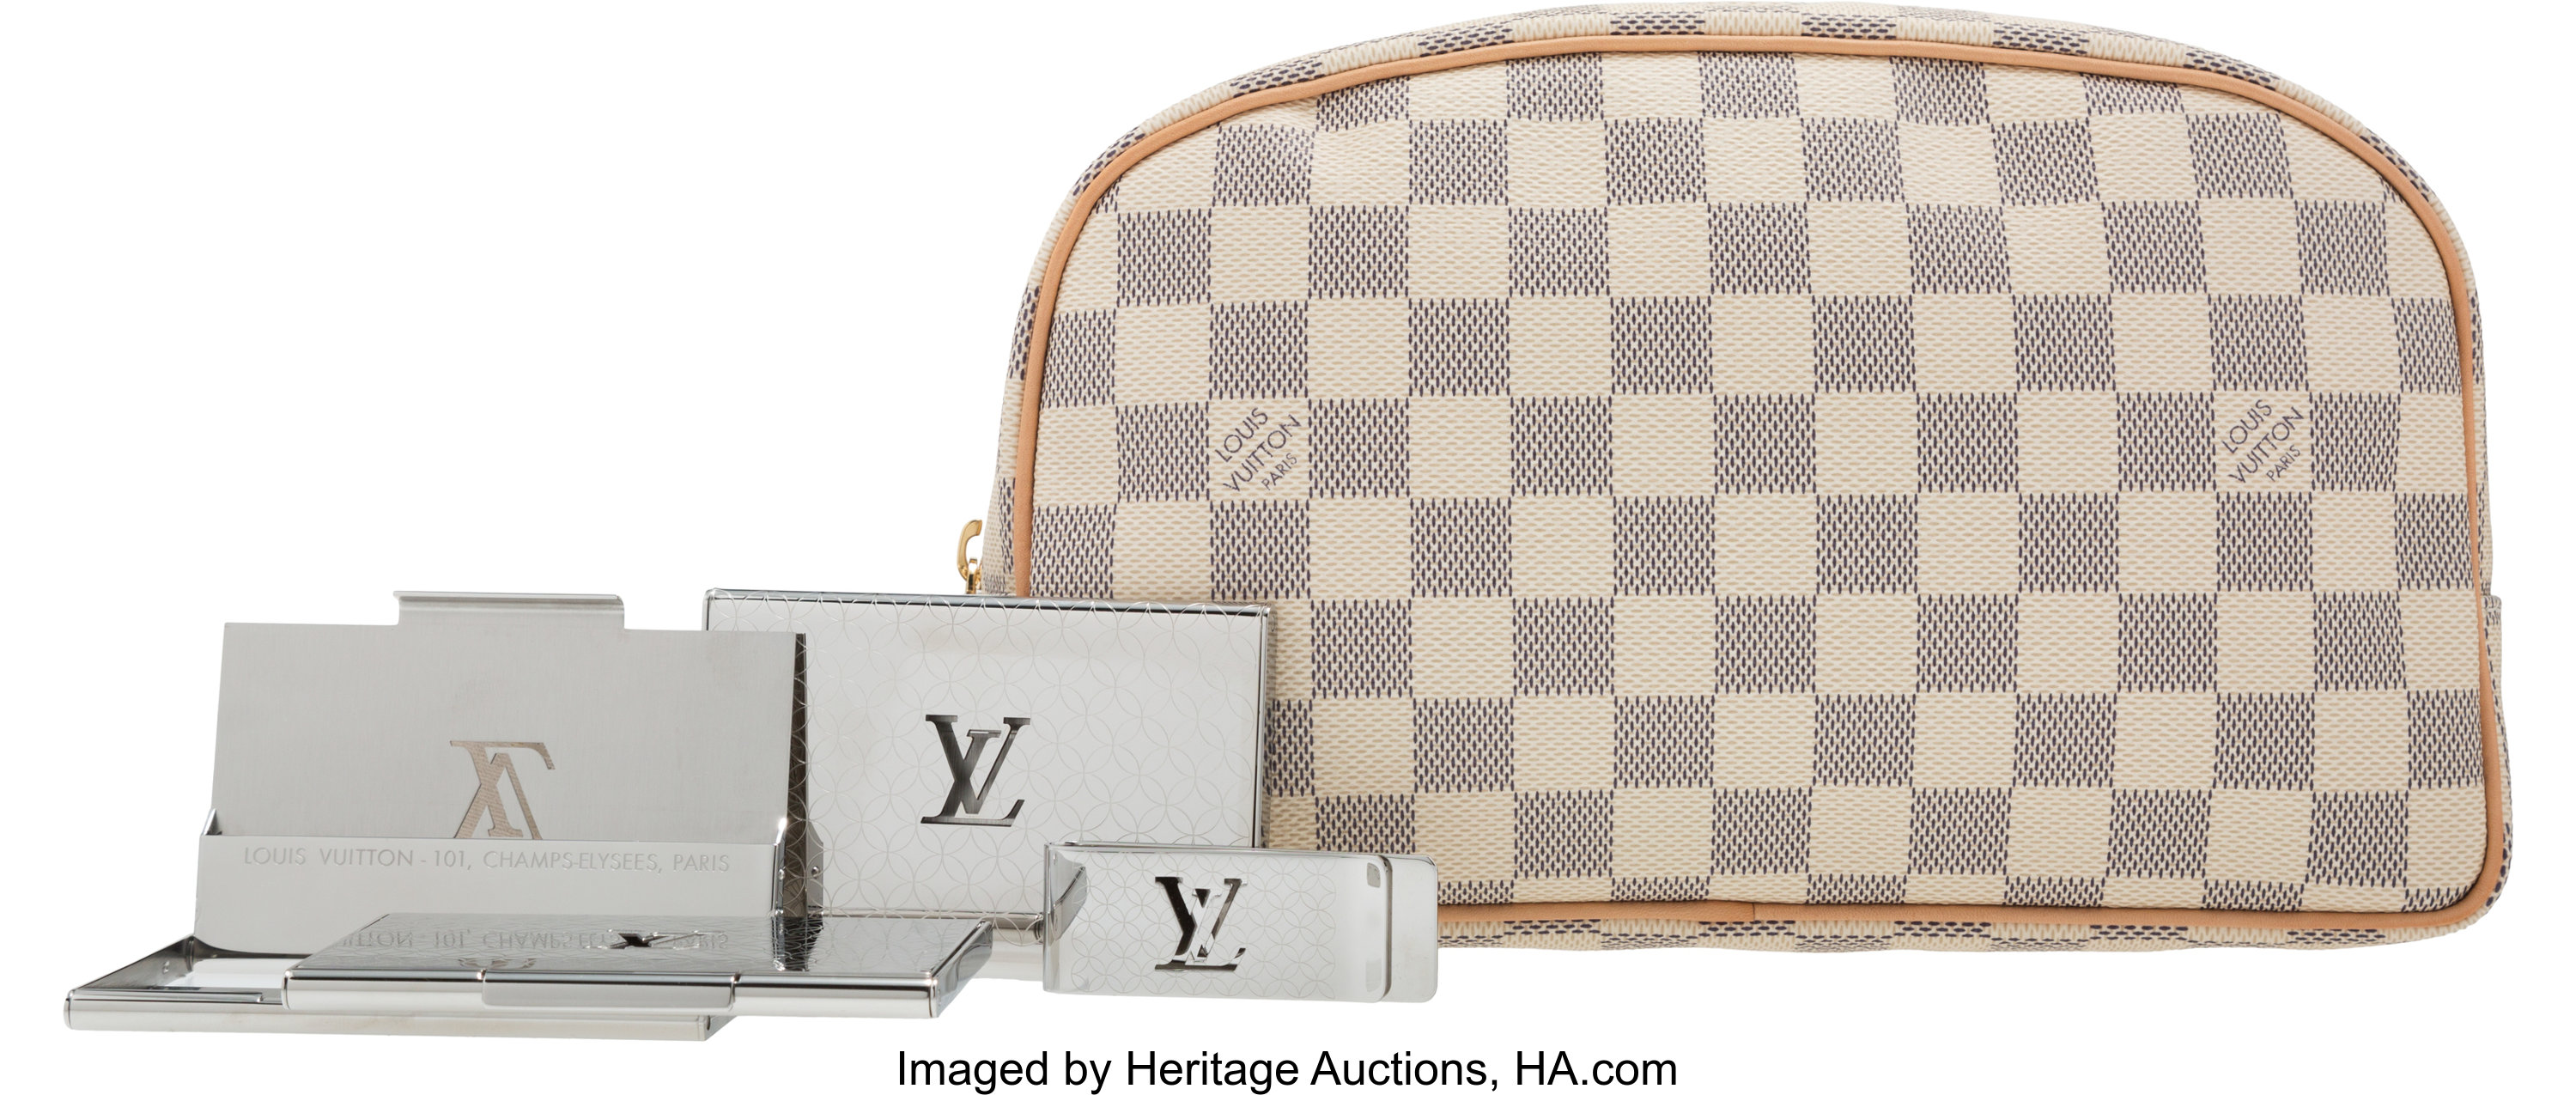 Sold at Auction: Louis Vuitton Damier Azur Pochette Accessoires